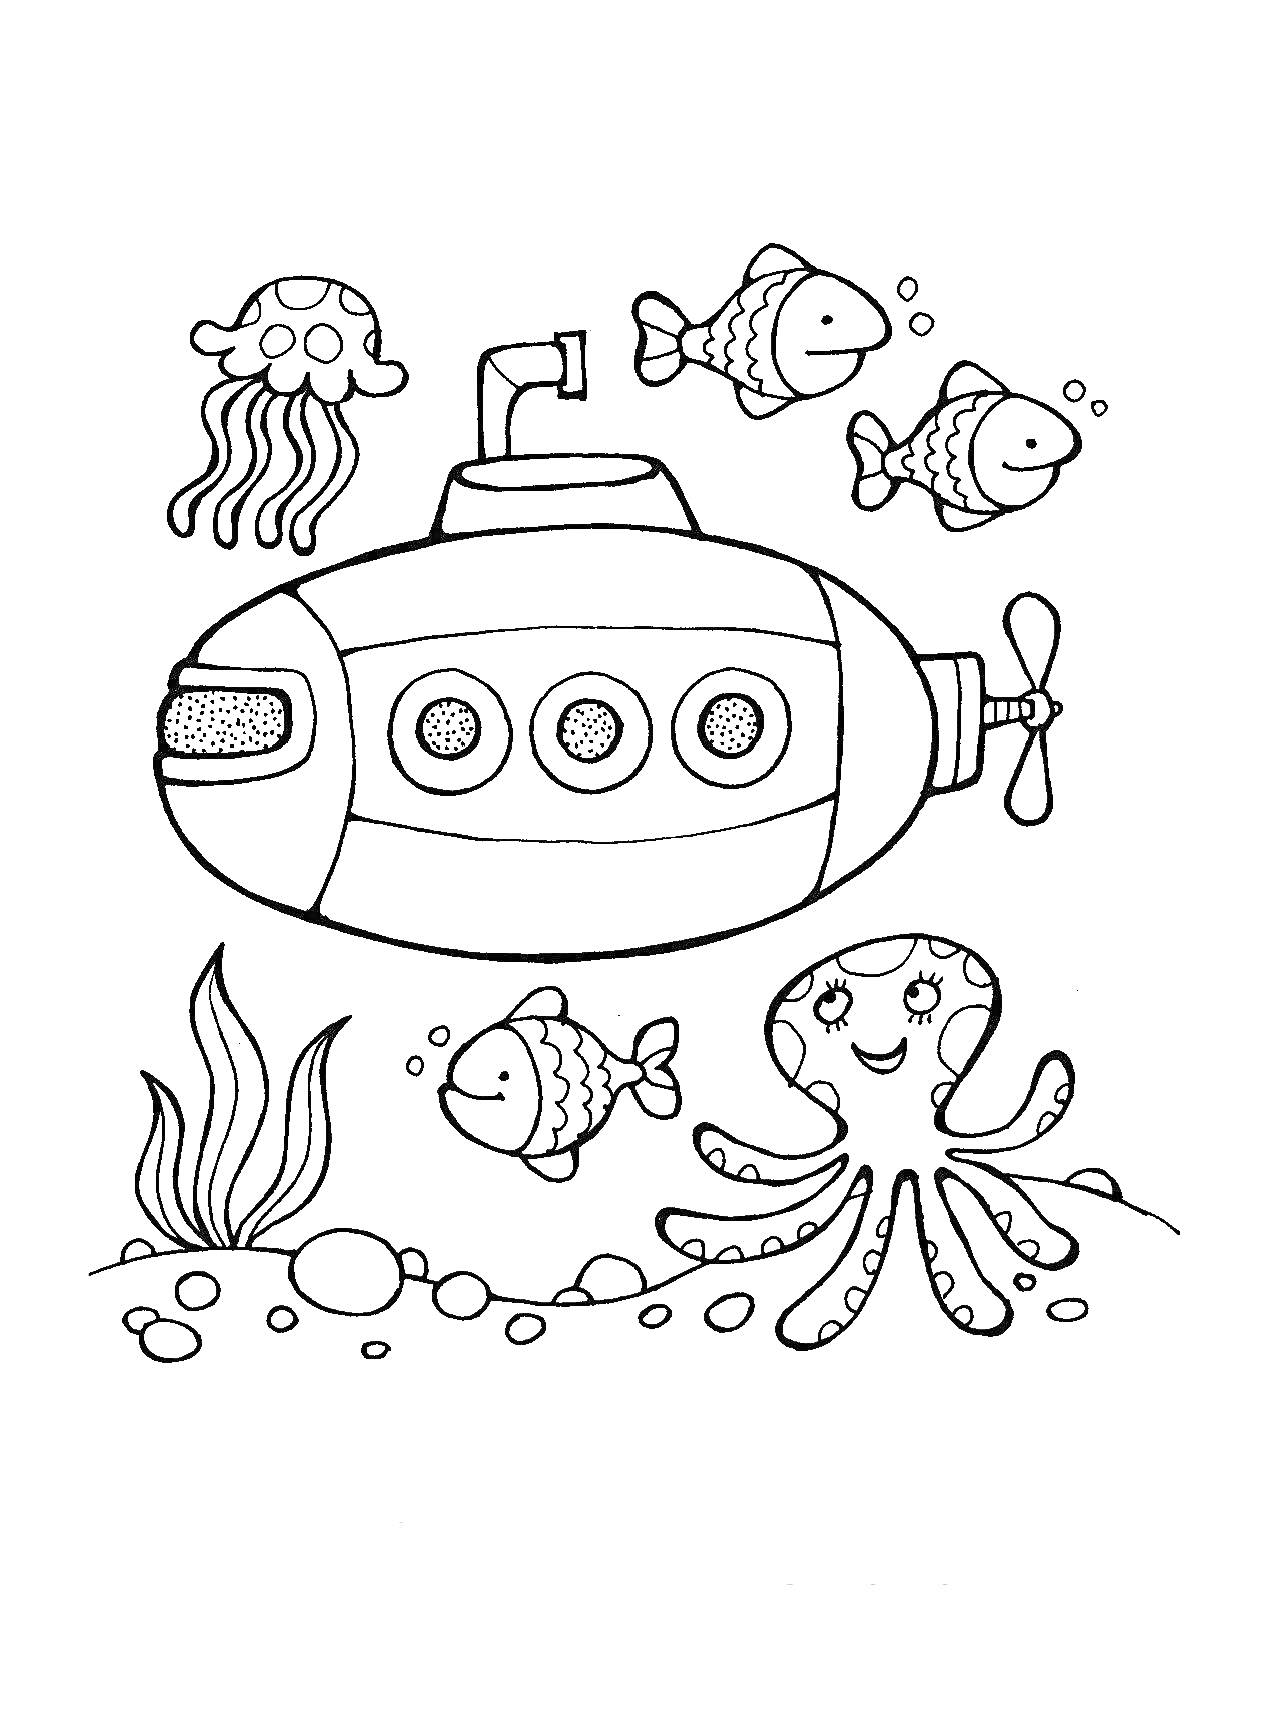 Раскраска Подводная лодка с тремя круглыми иллюминаторами, четыре рыбы, осьминог, медуза, водоросли и камни на дне